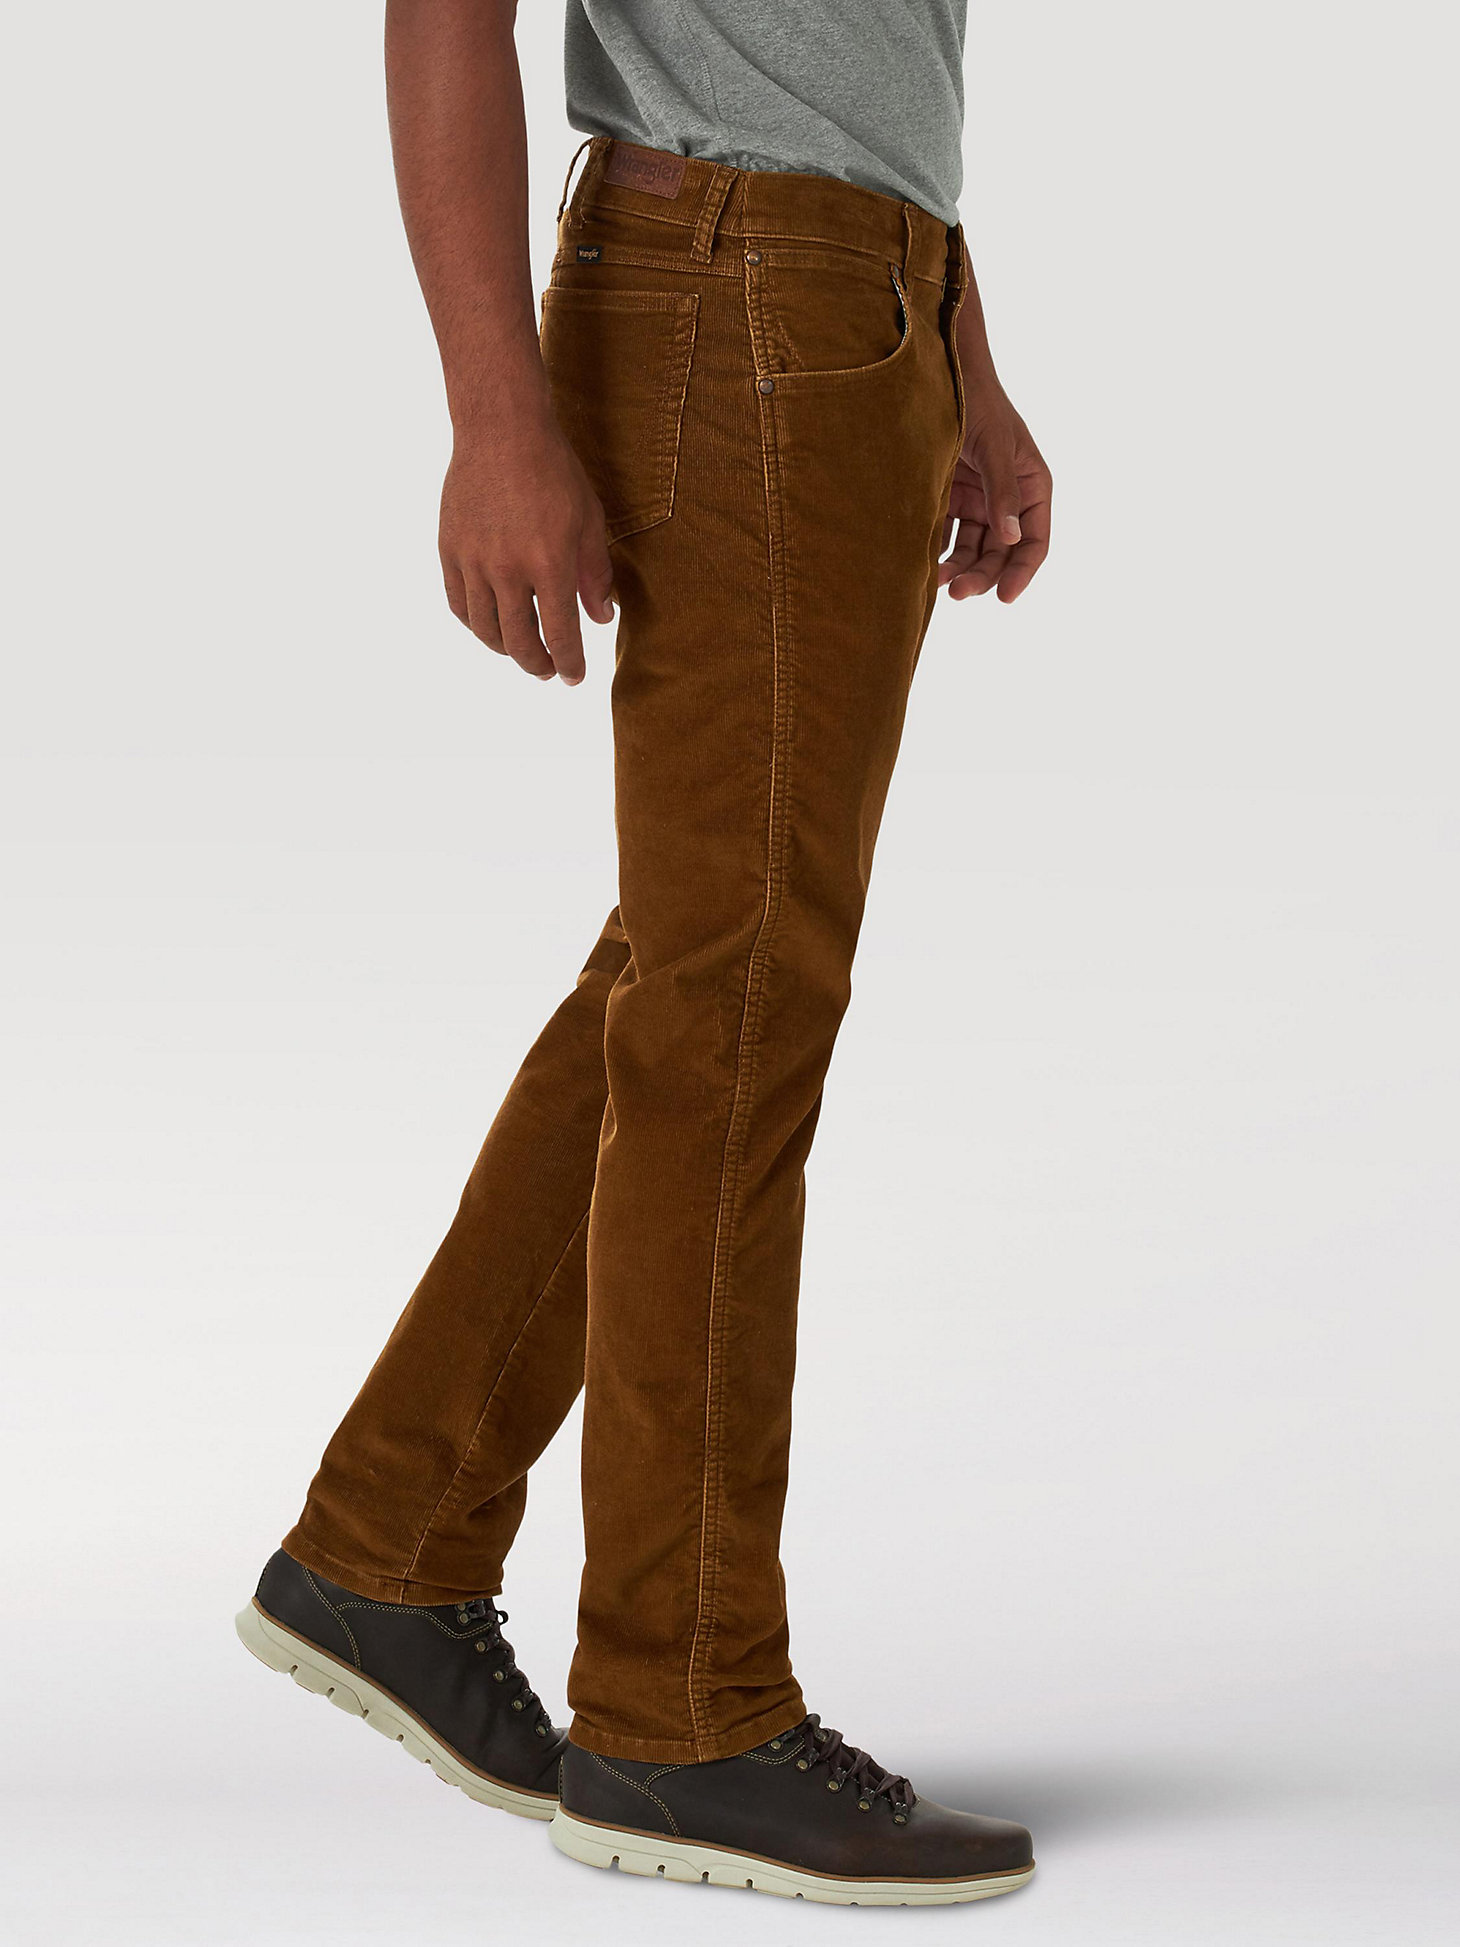 Men's Wrangler® Regular Tapered Corduroy Jeans in Monks Robe alternative view 3